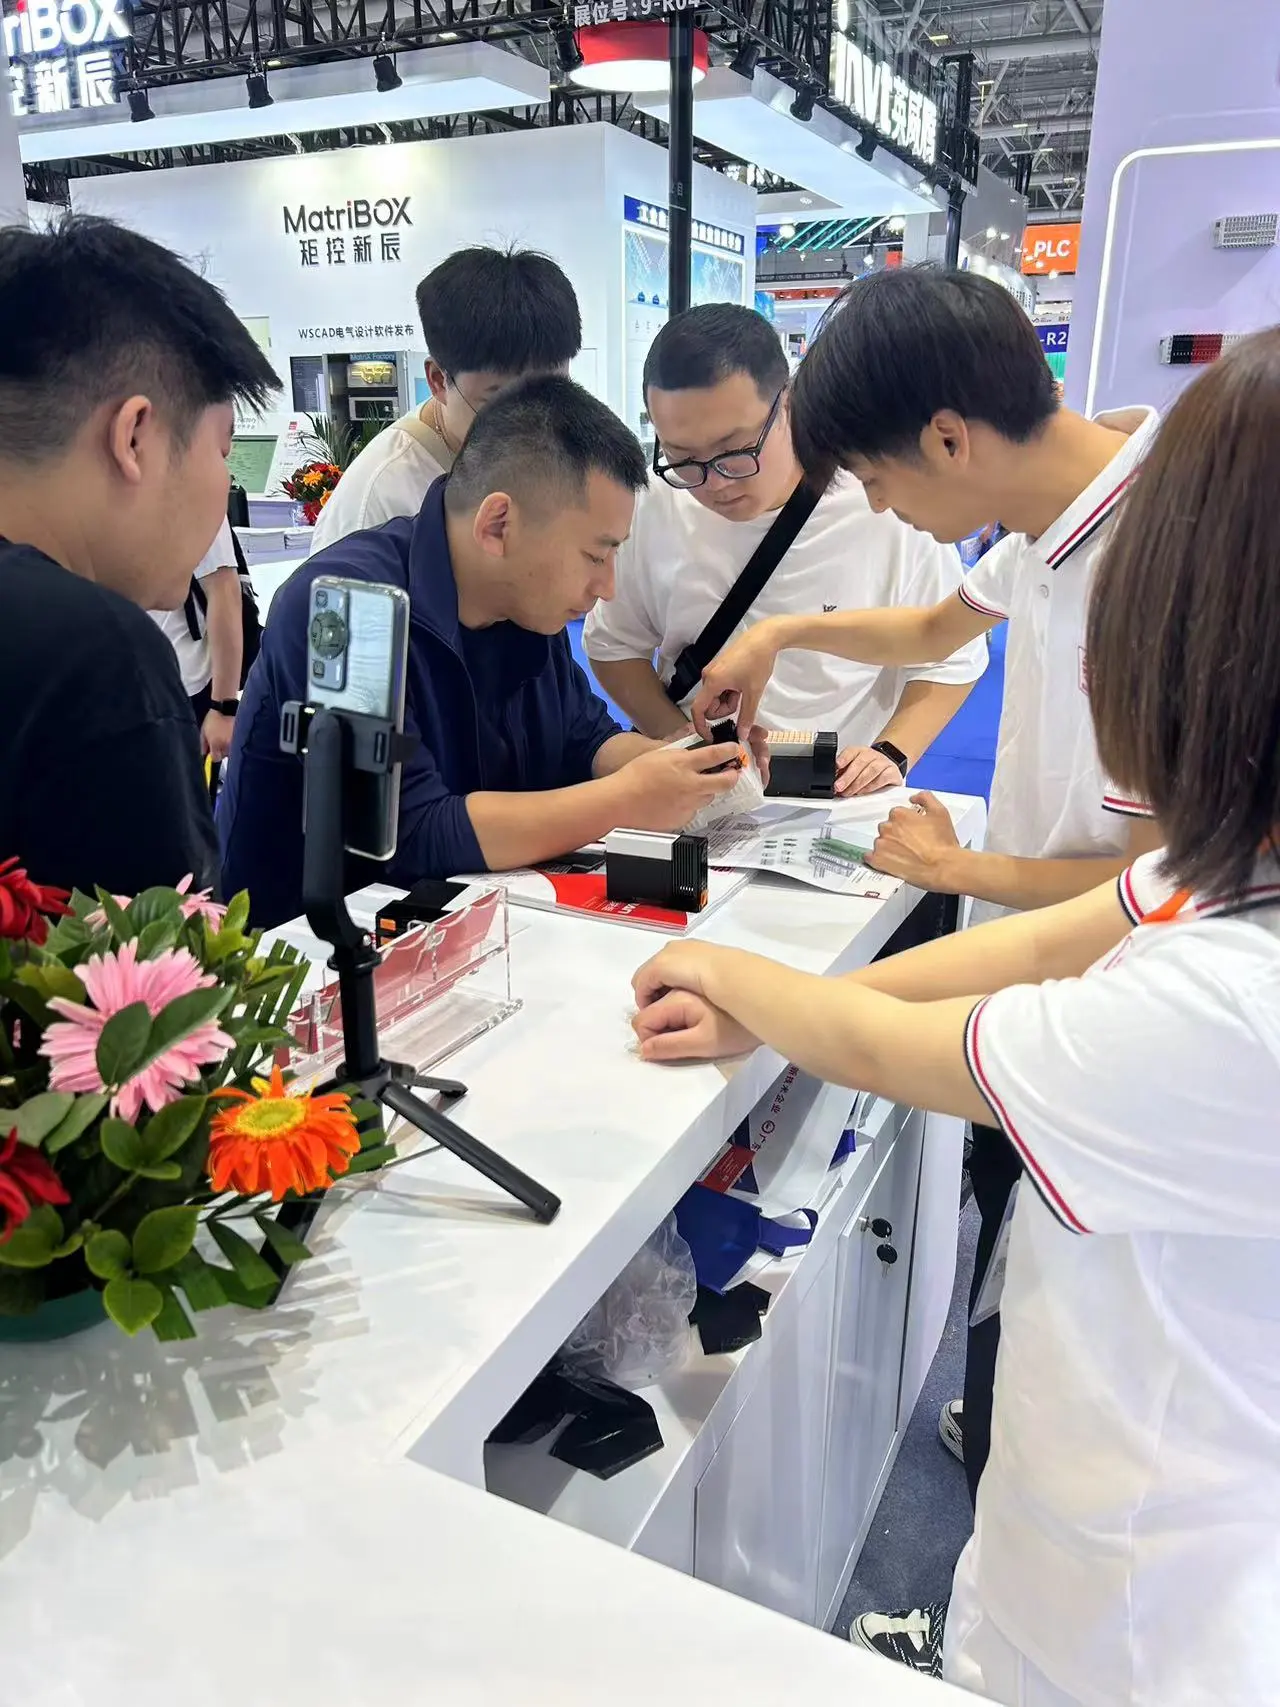 Võttes omaks intelligentse tööstusautomaatika laine, pälvis Sanan tööstuse tunnustuse Shenzheni ITES-i näitusel